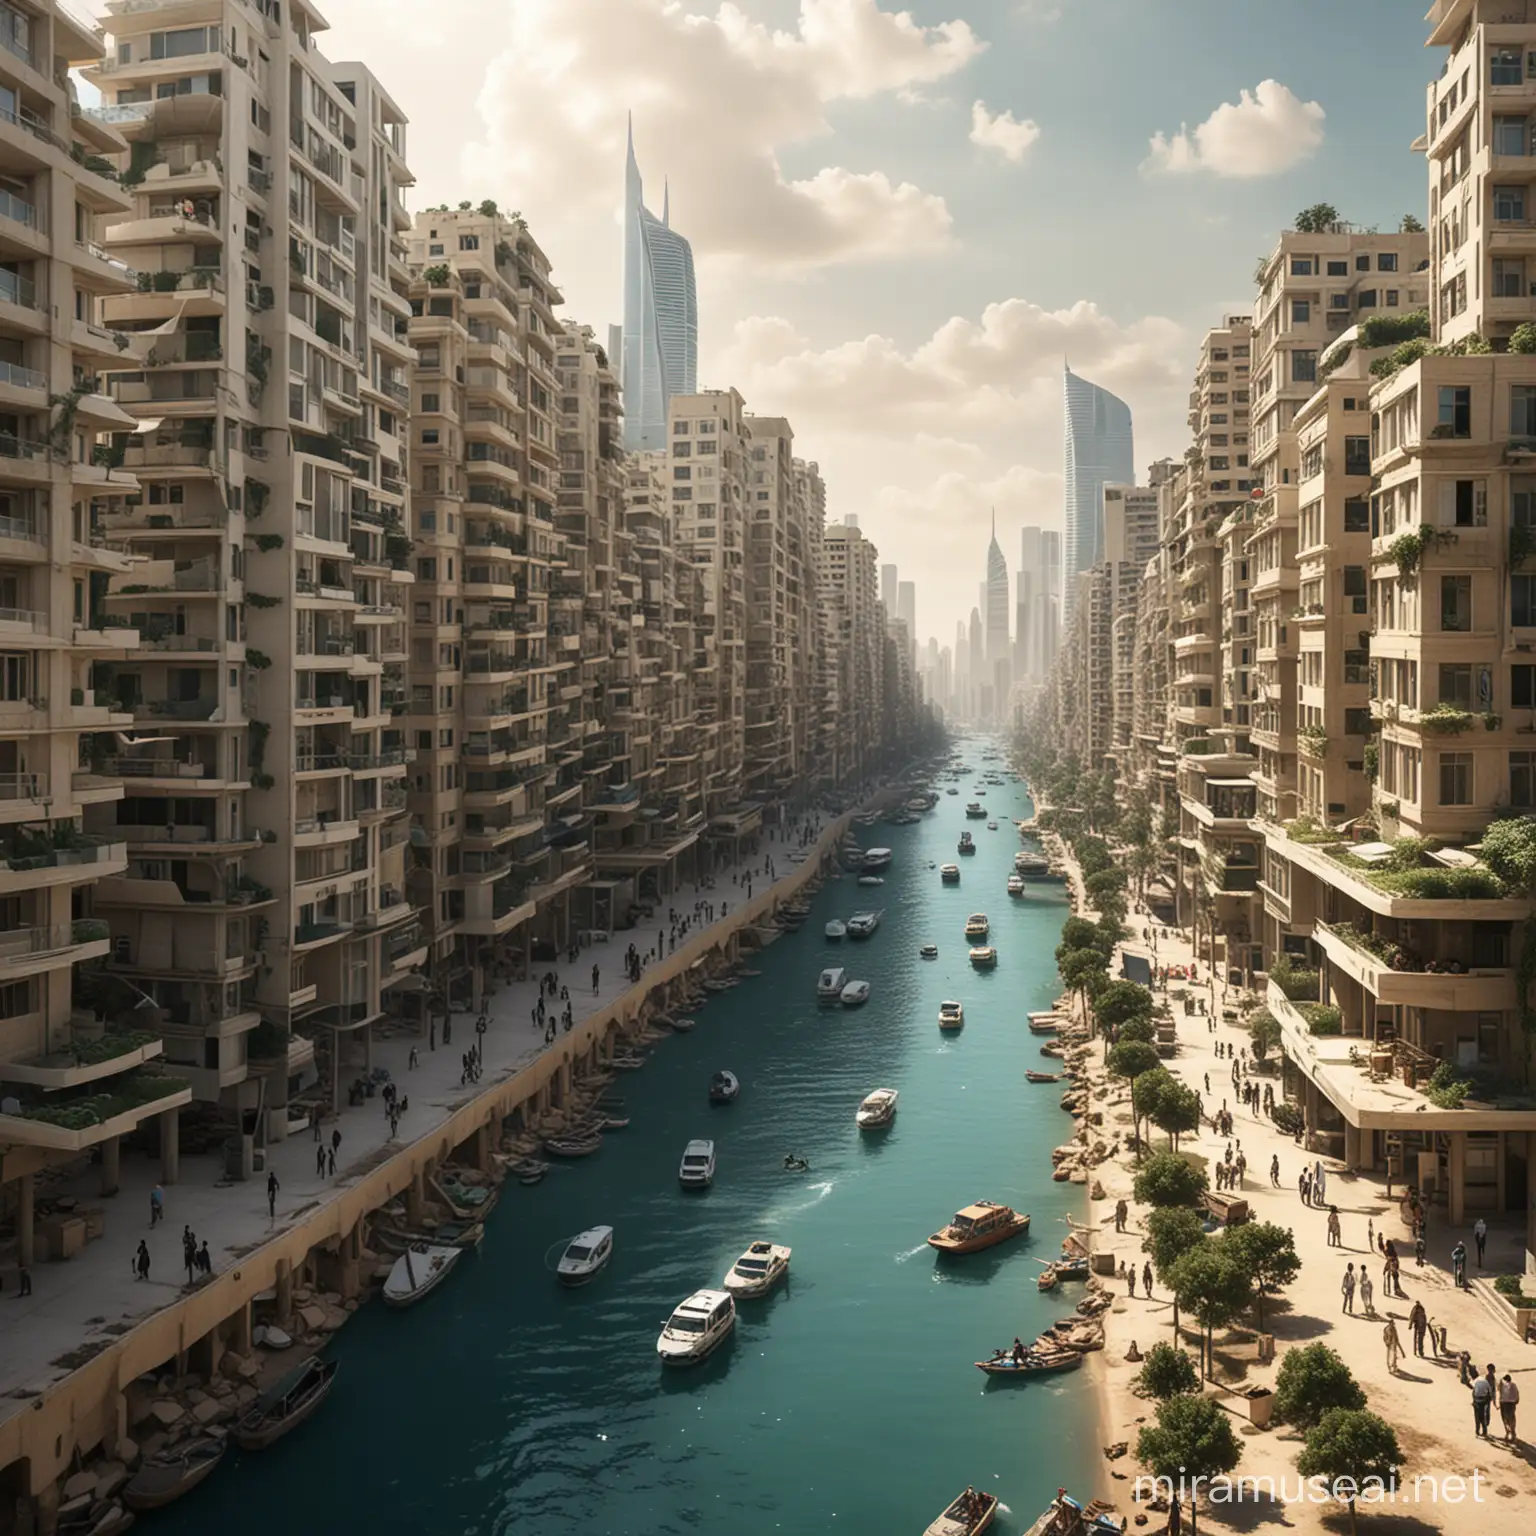 Futuristic Urban Landscape of Beirut in 2050